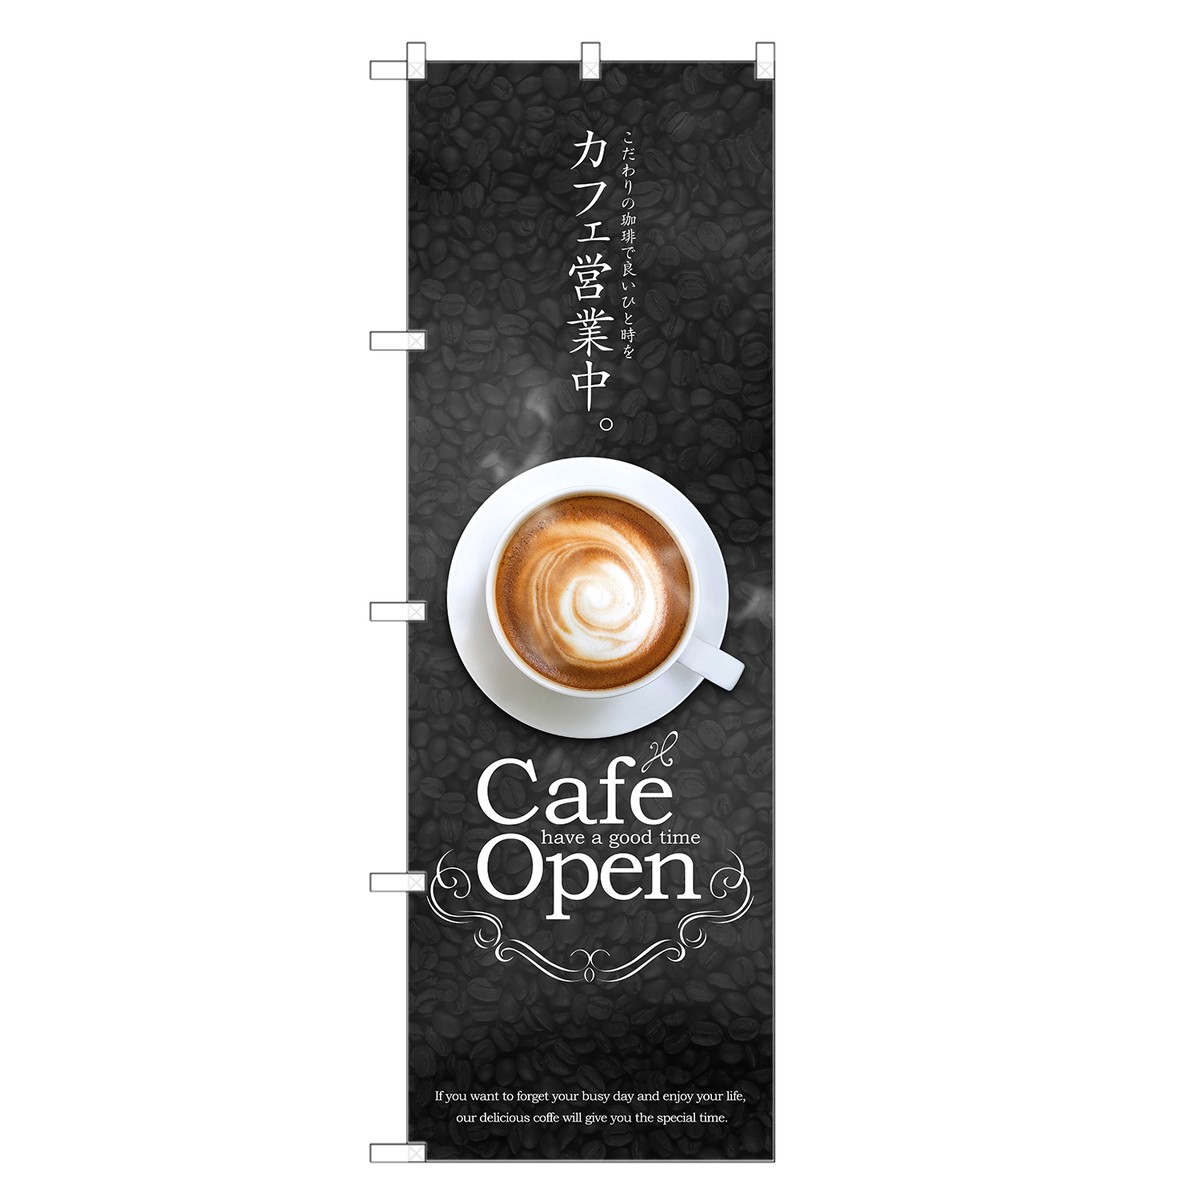 のぼり旗 カフェ 営業中 のぼり | cafe open オープン 喫茶店 | 四方三巻縫製 F21-0026C-R